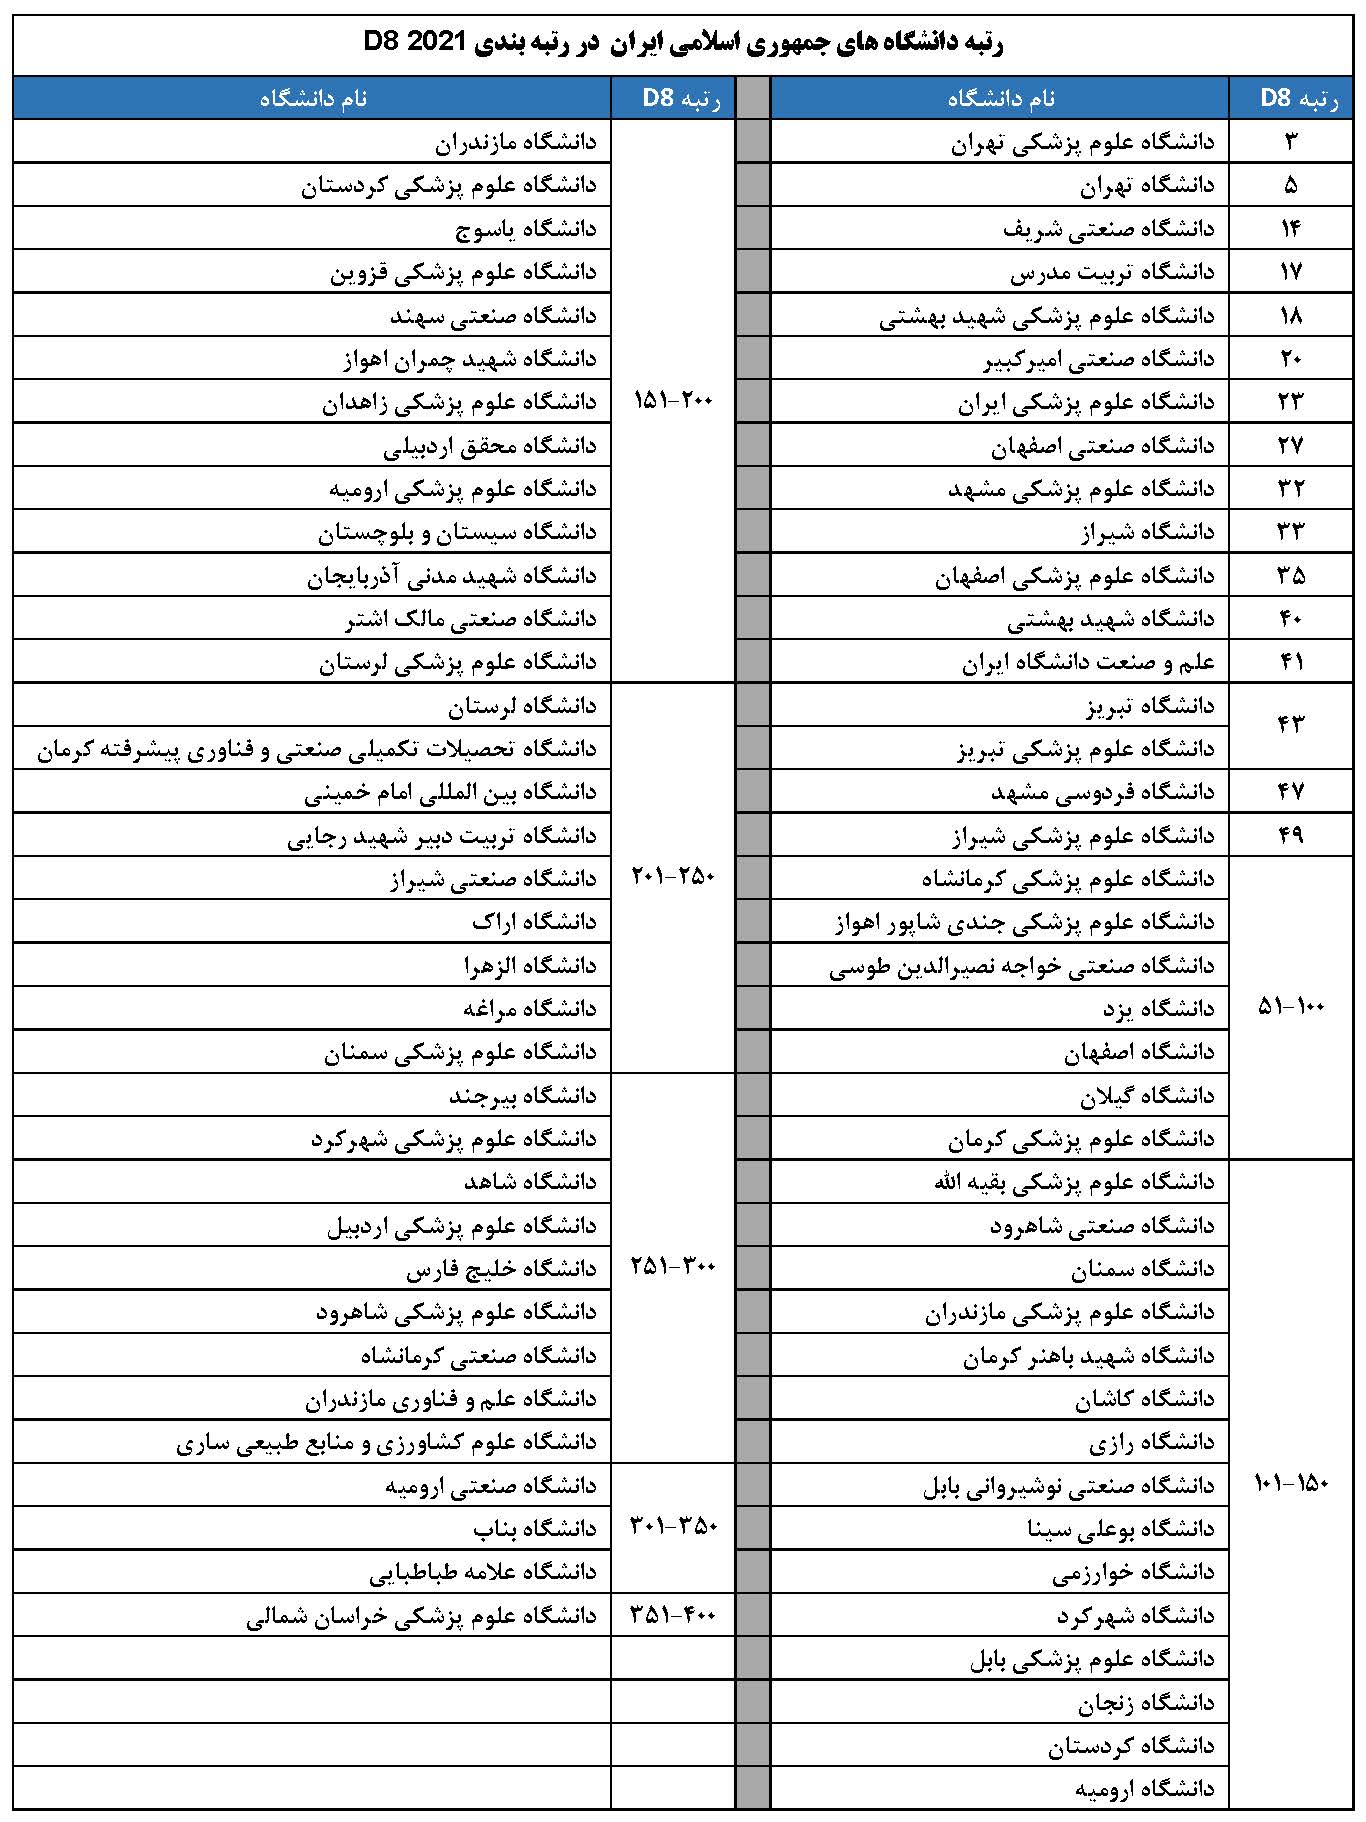 رتبه بندی دانشگاه¬های کشورهای گروه D8  2021 : حضور 74 دانشگاه از جمهوری اسلامی ایران